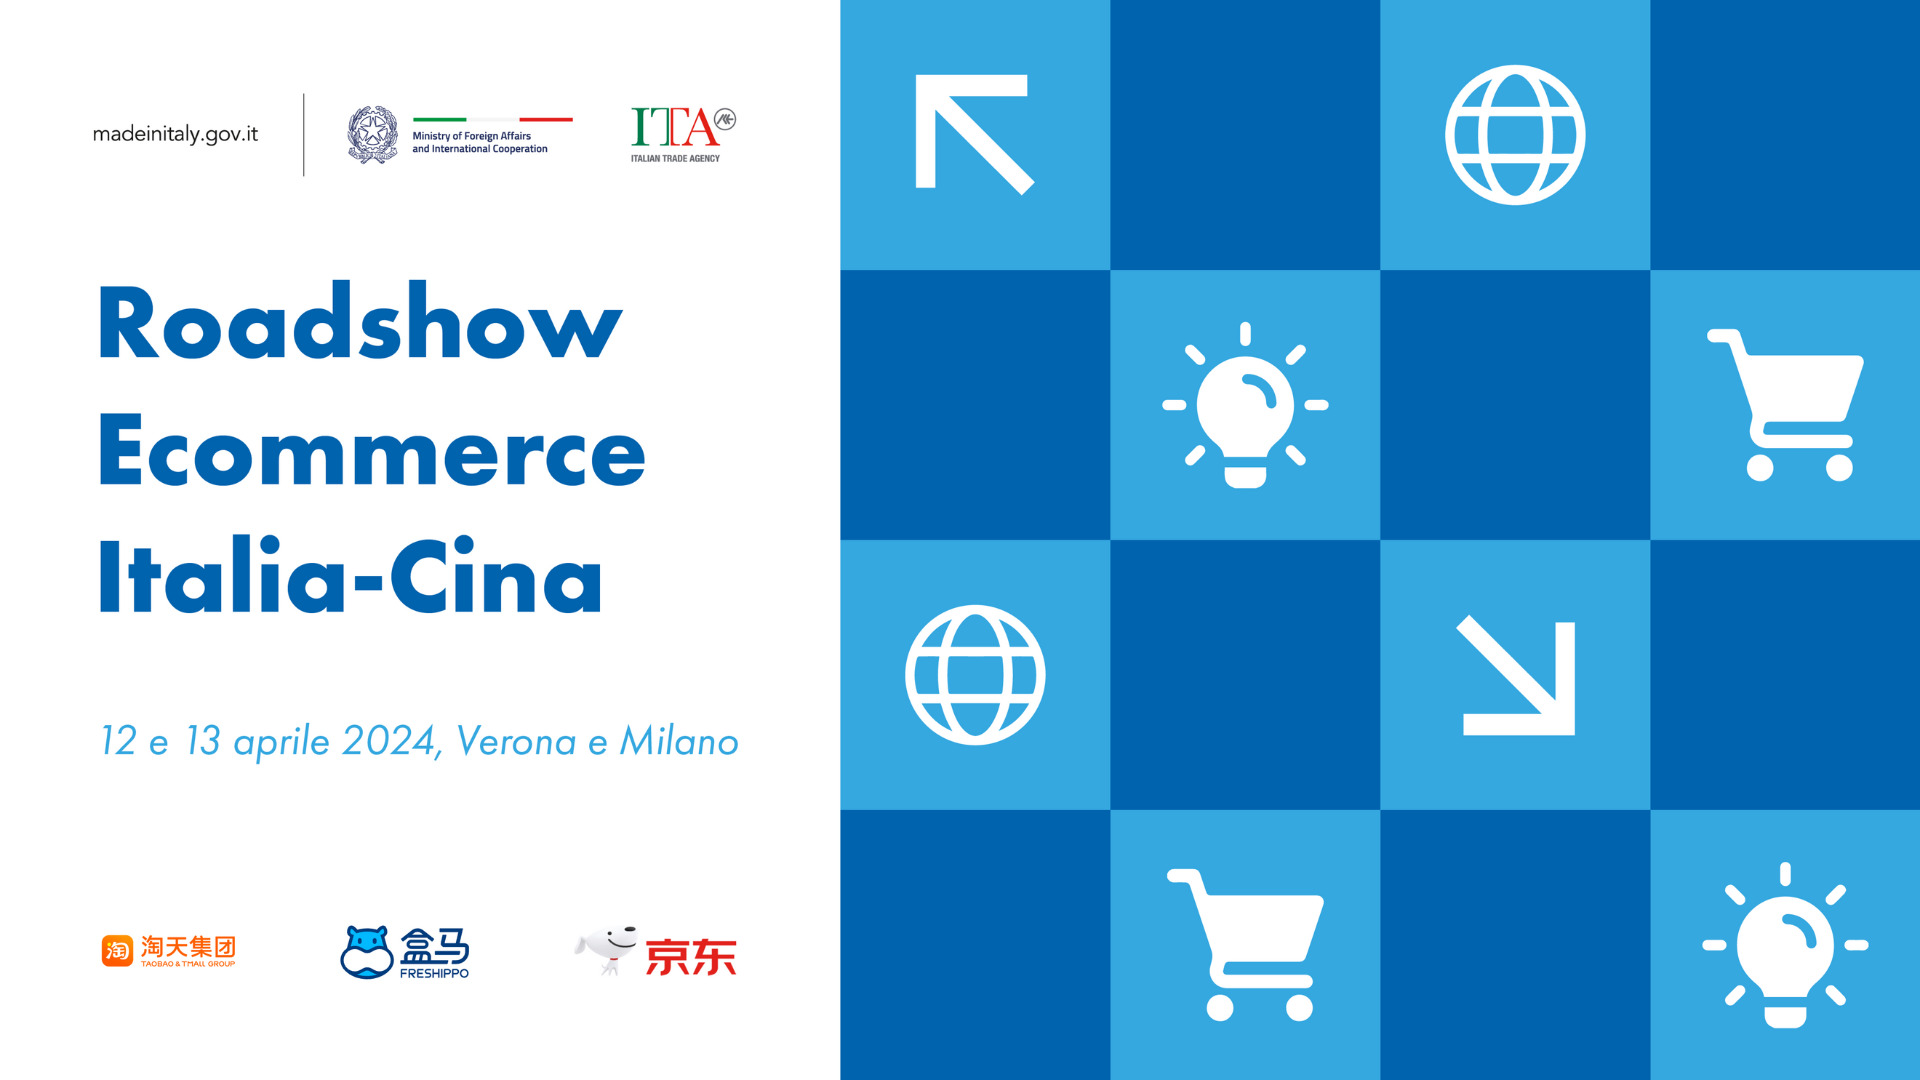 Roadshow E-commerce Italia-Cina